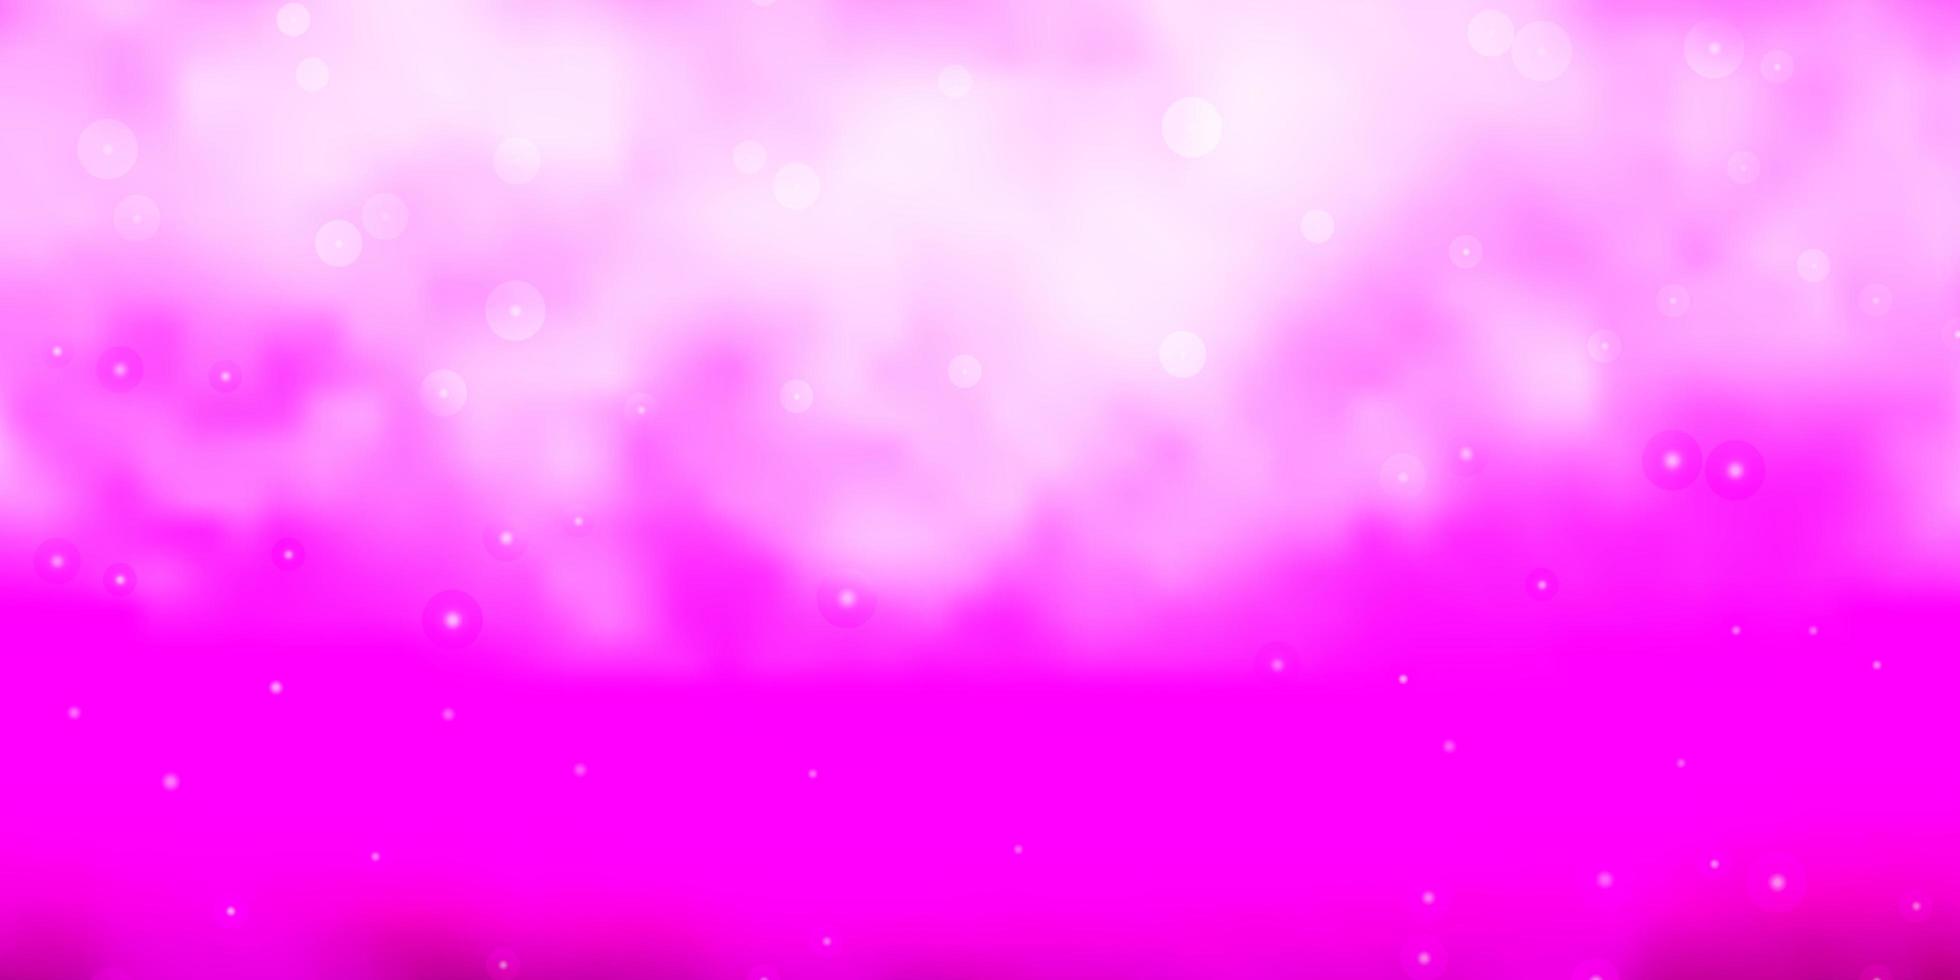 sfondo vettoriale rosa viola chiaro con stelle colorate che brillano illustrazione colorata con stelle piccole e grandi design per la tua promozione aziendale